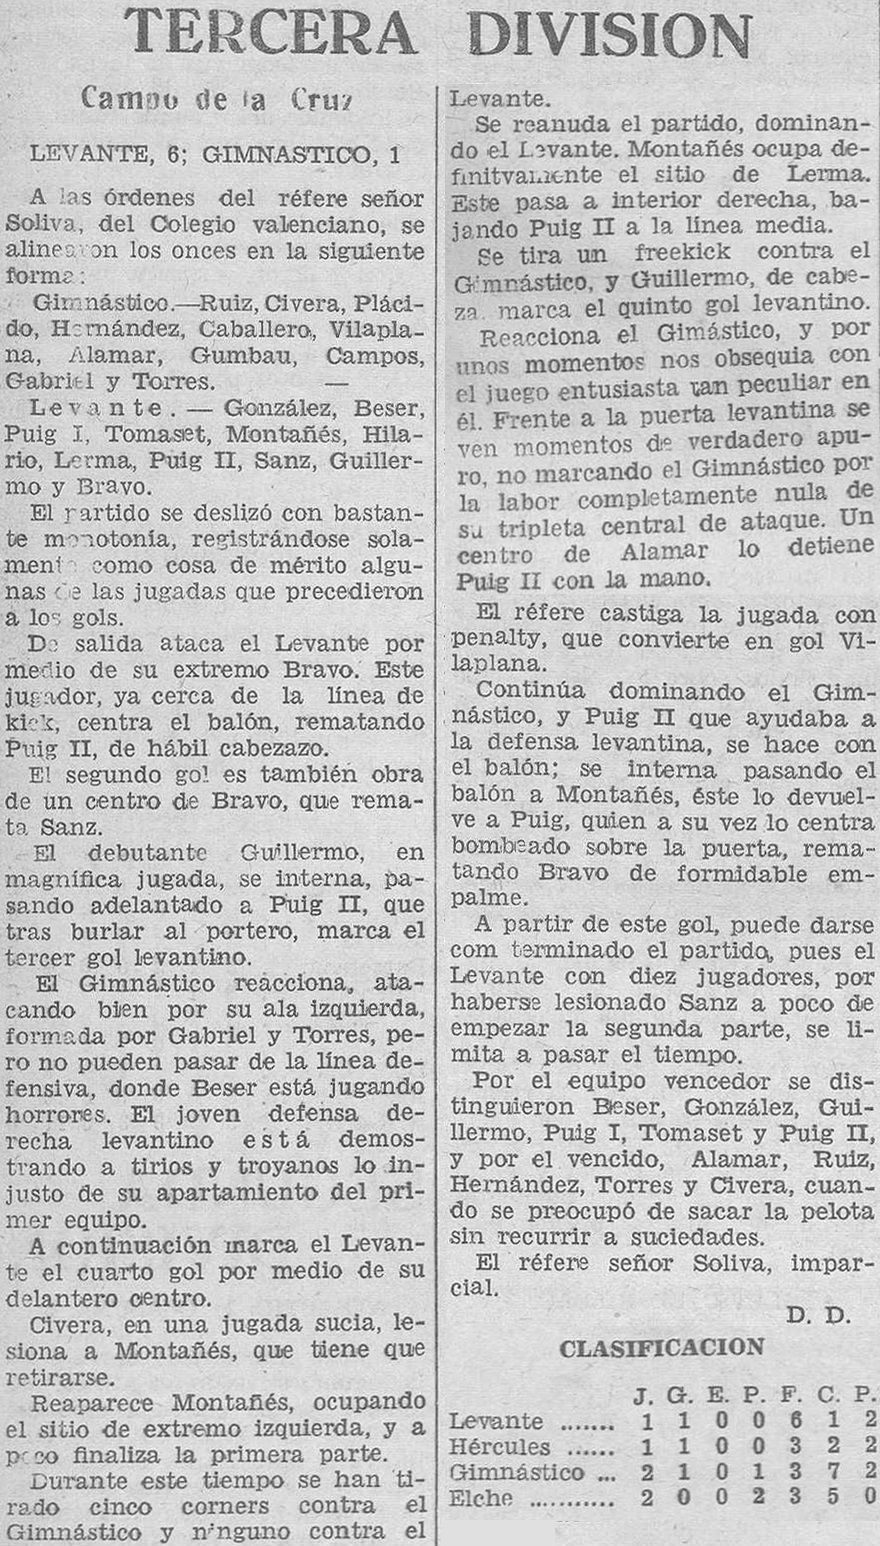 1932.12.11 (11 декабря 1932), Леванте - Гимнастико, 6-1.jpg